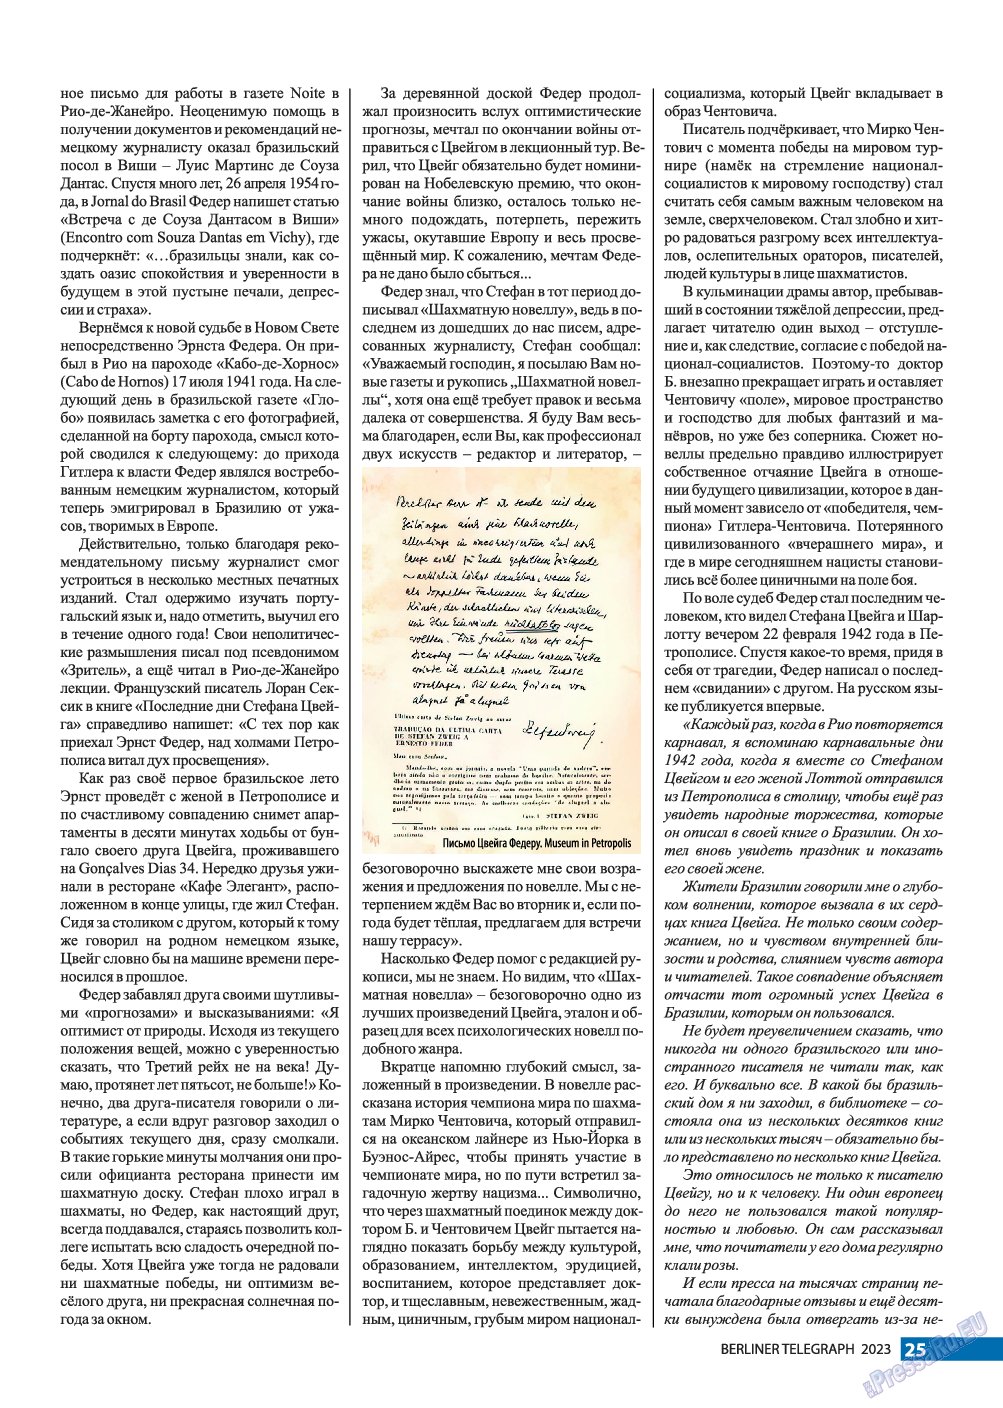 Берлинский телеграф, журнал. 2023 №3 стр.25